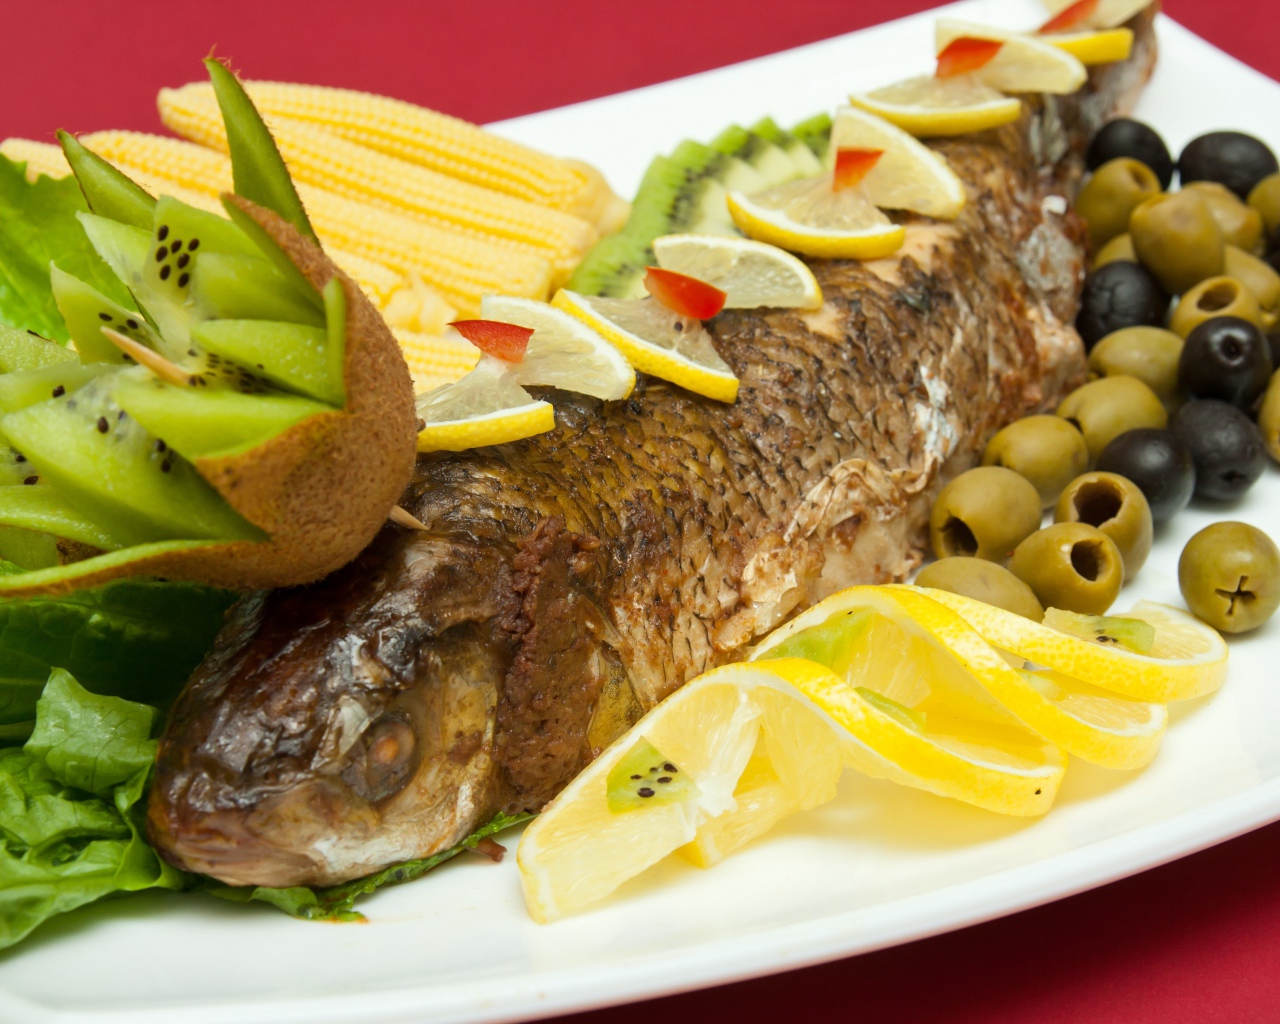 Запеченная рыба с оливками, лимоном, киви, кукурузой и листьями салата на белой тарелке